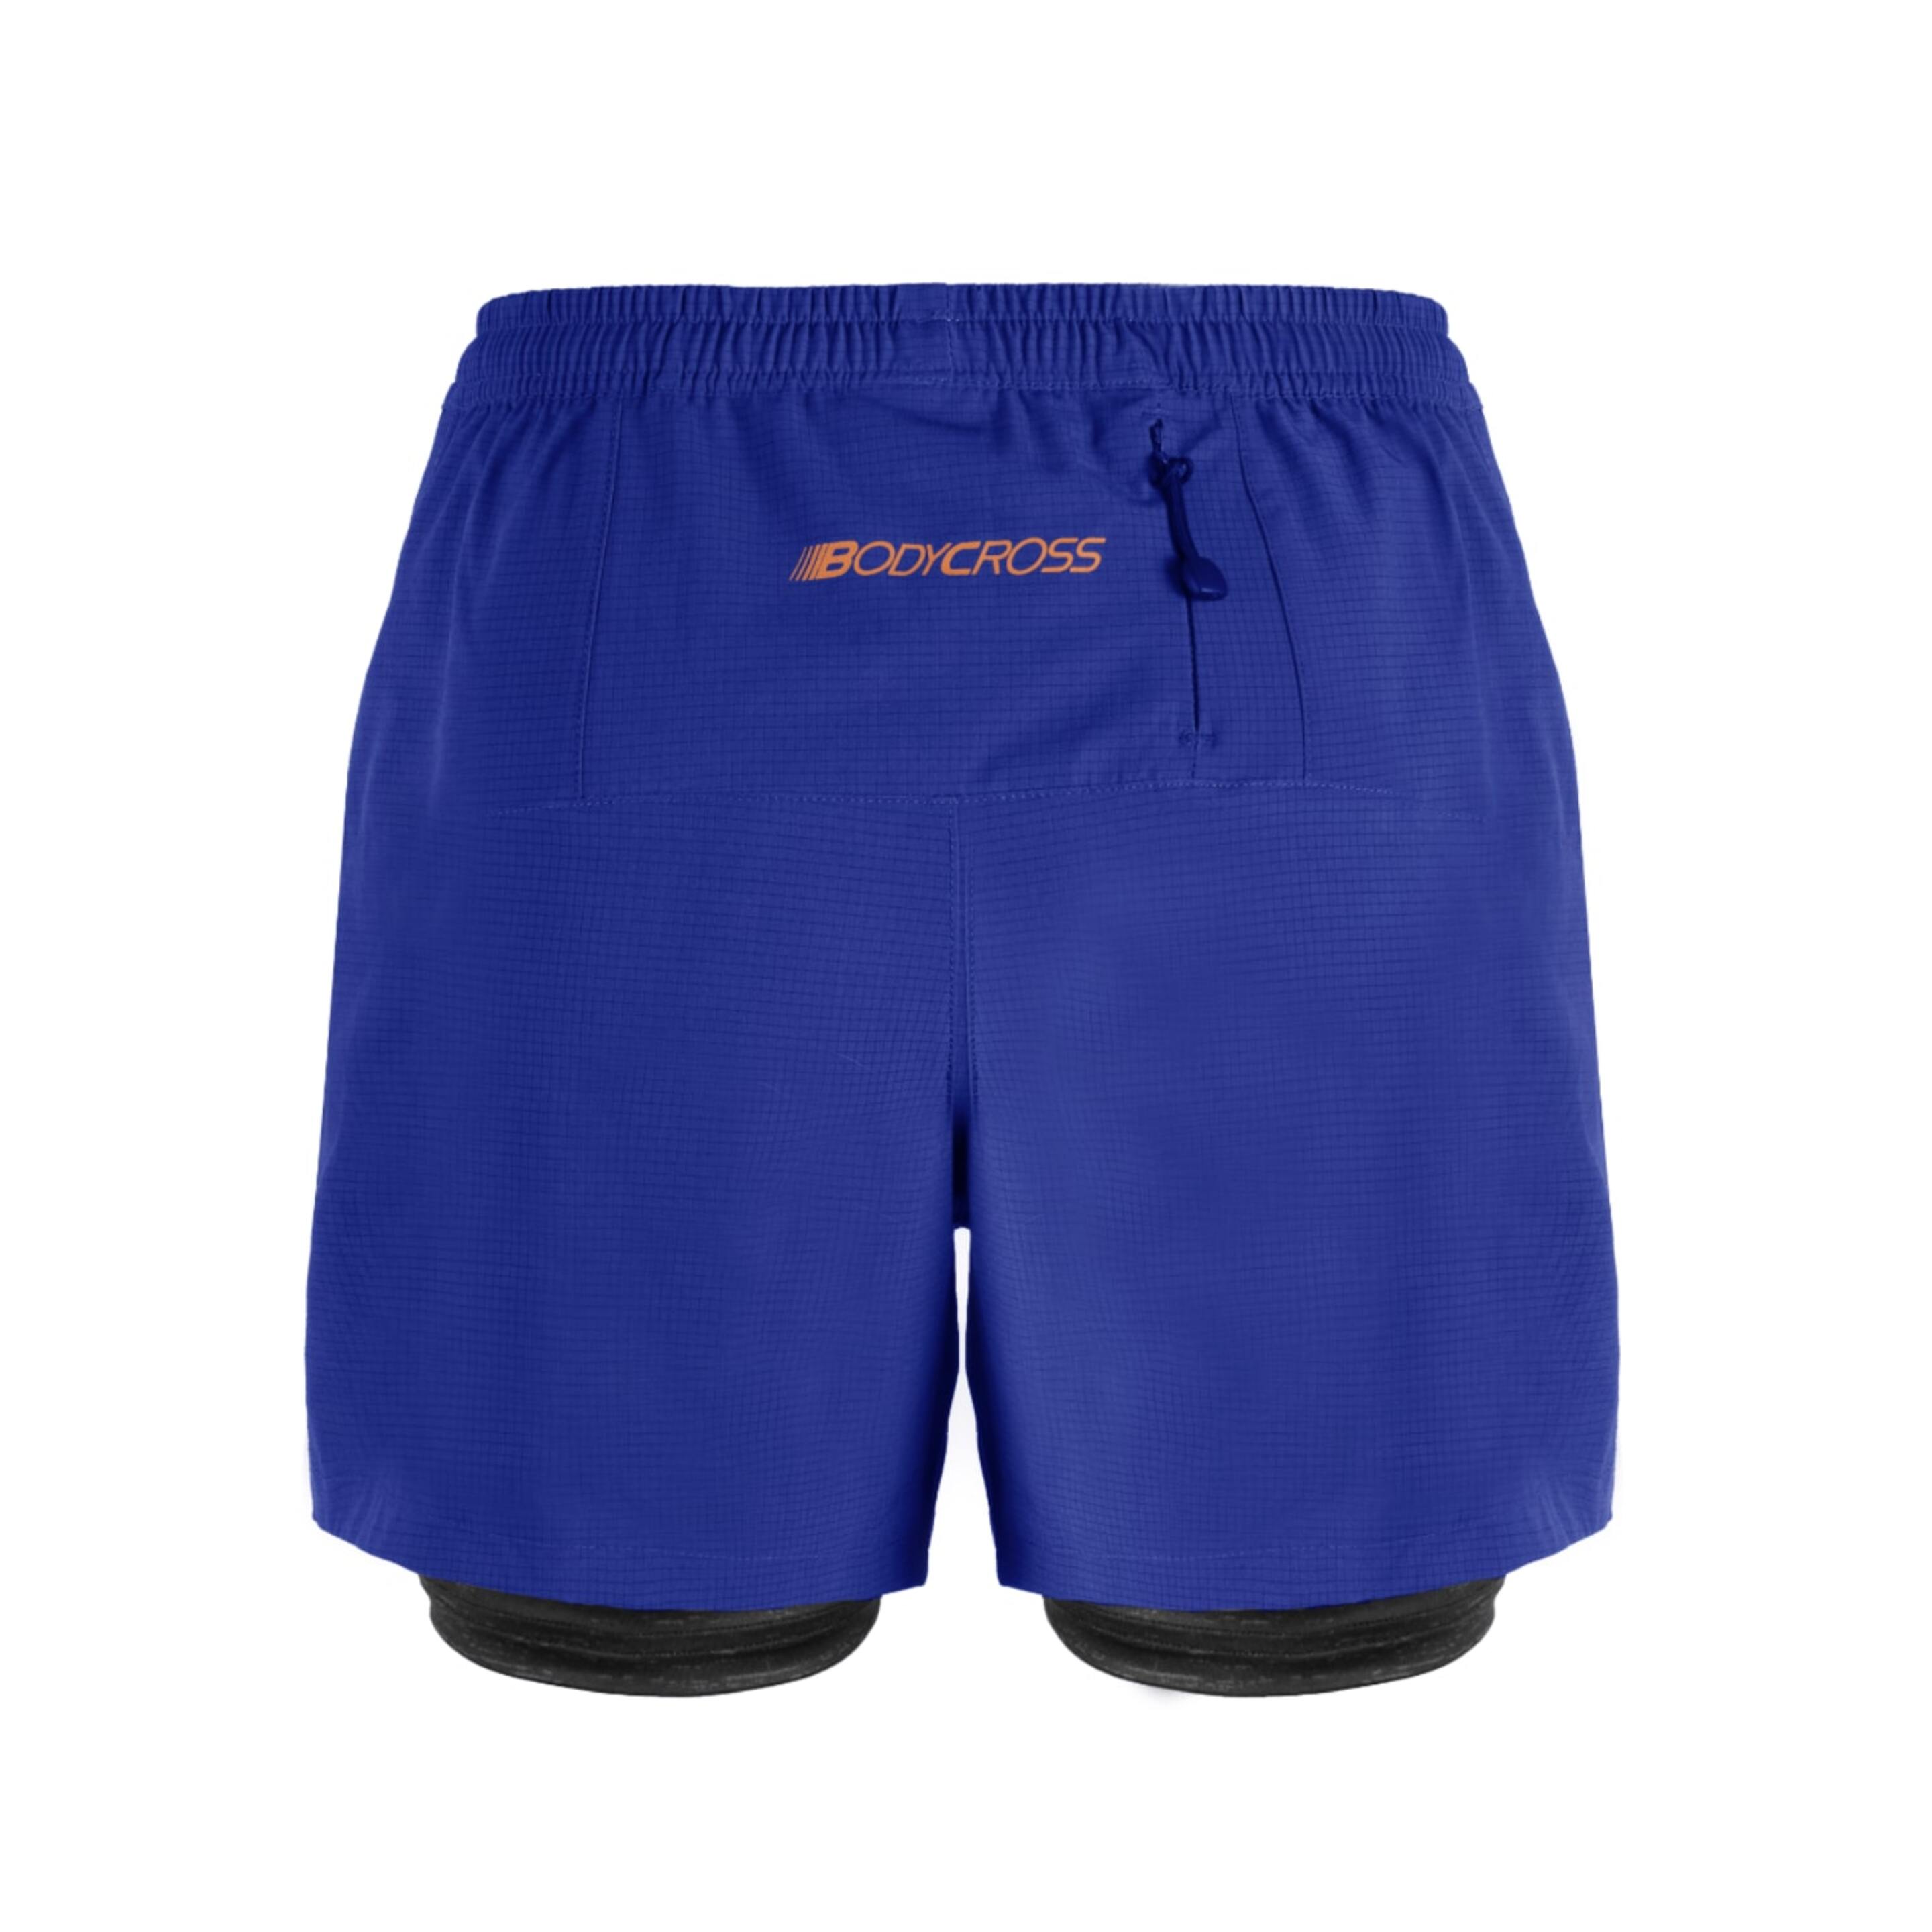 Shorts Bodycross 3 En 1 Ben - Azul - Ben-blue/orange-s  MKP